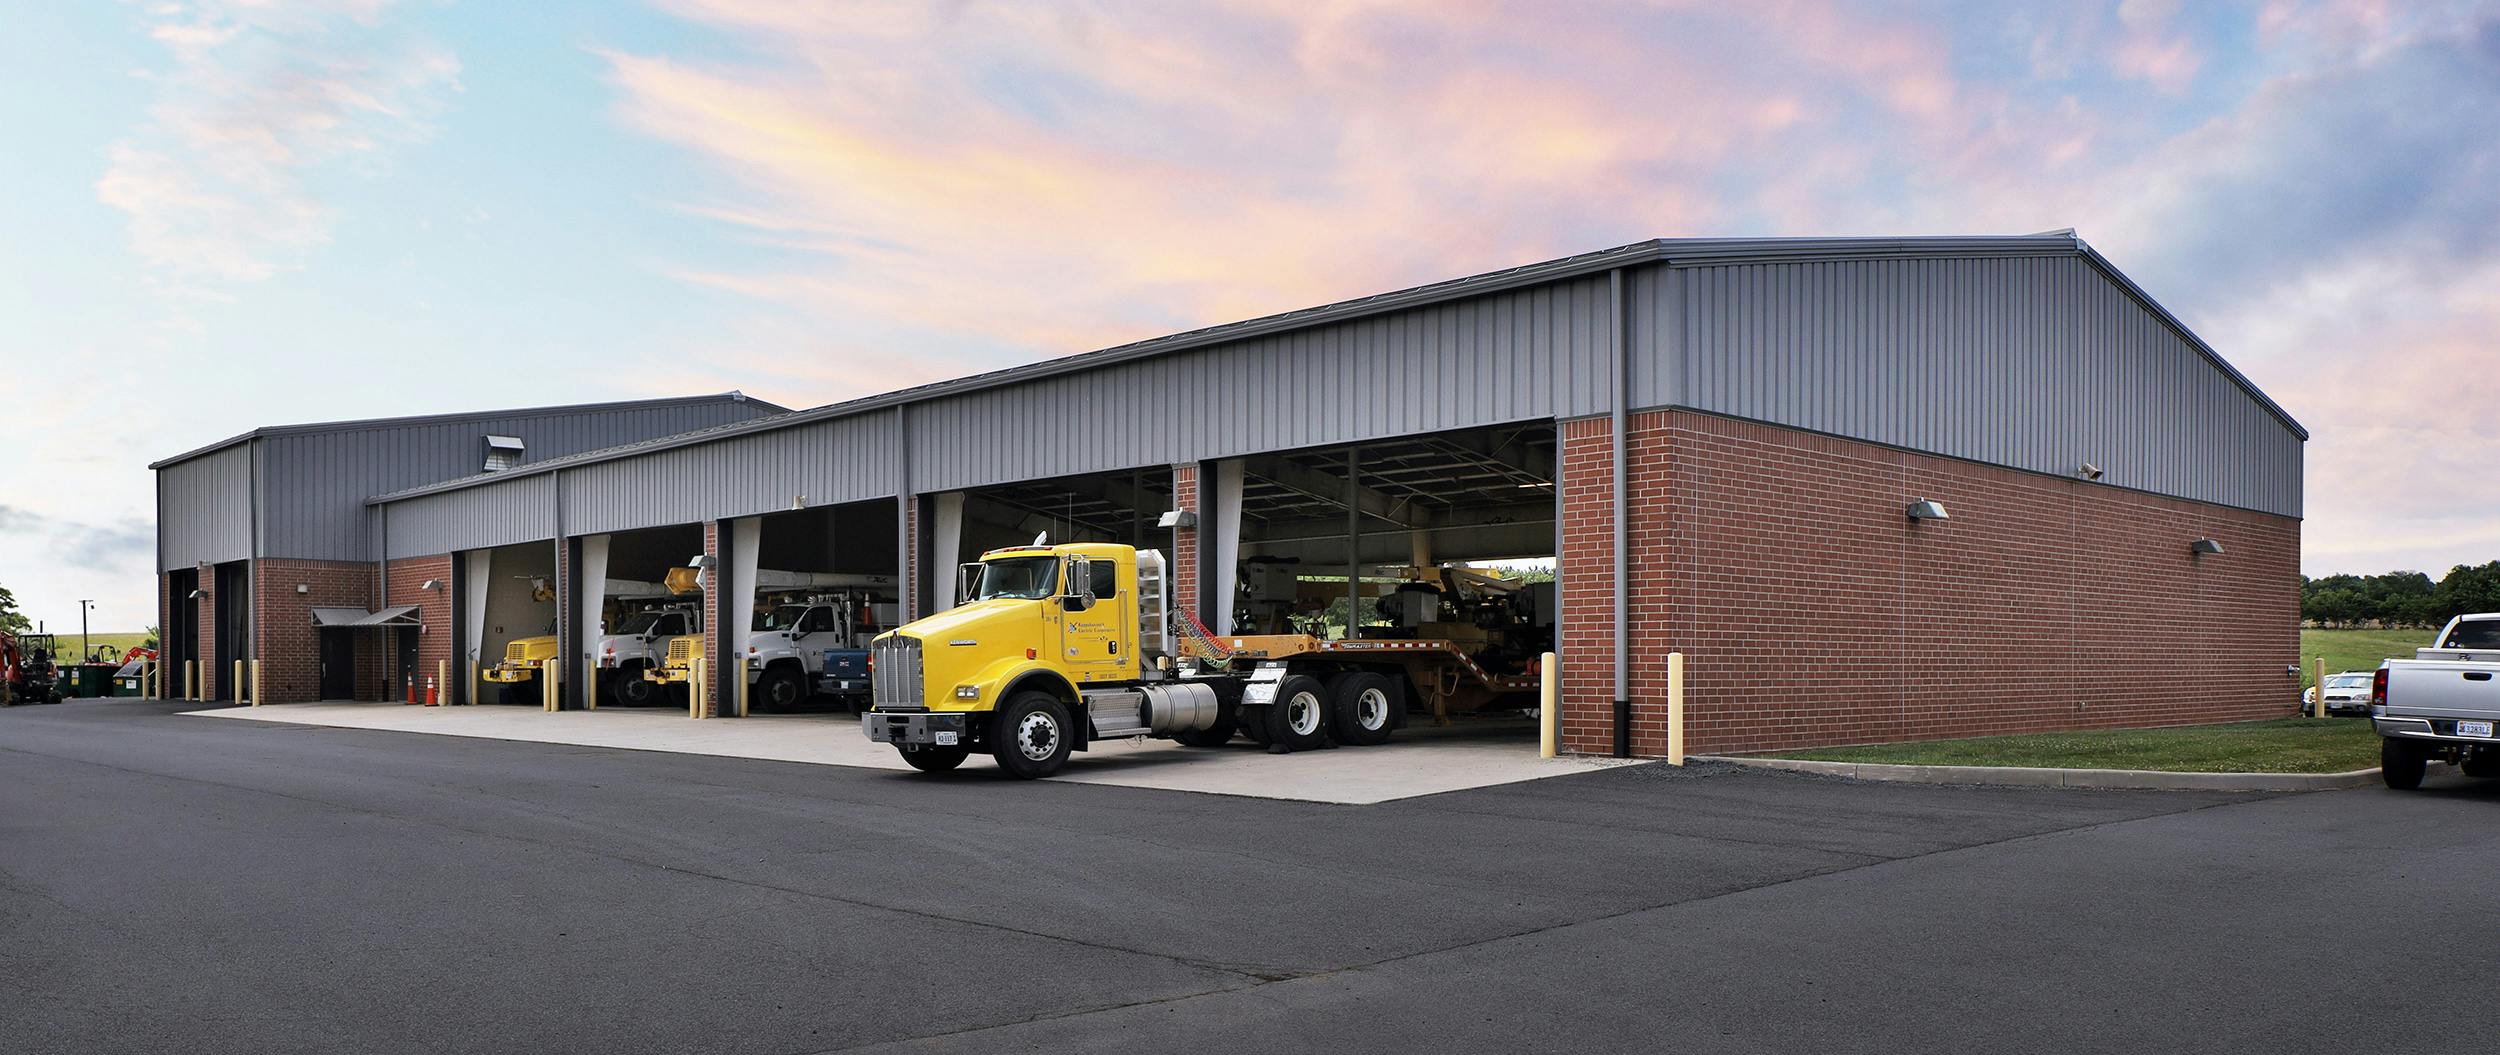 ata-truck-container-garage-doors